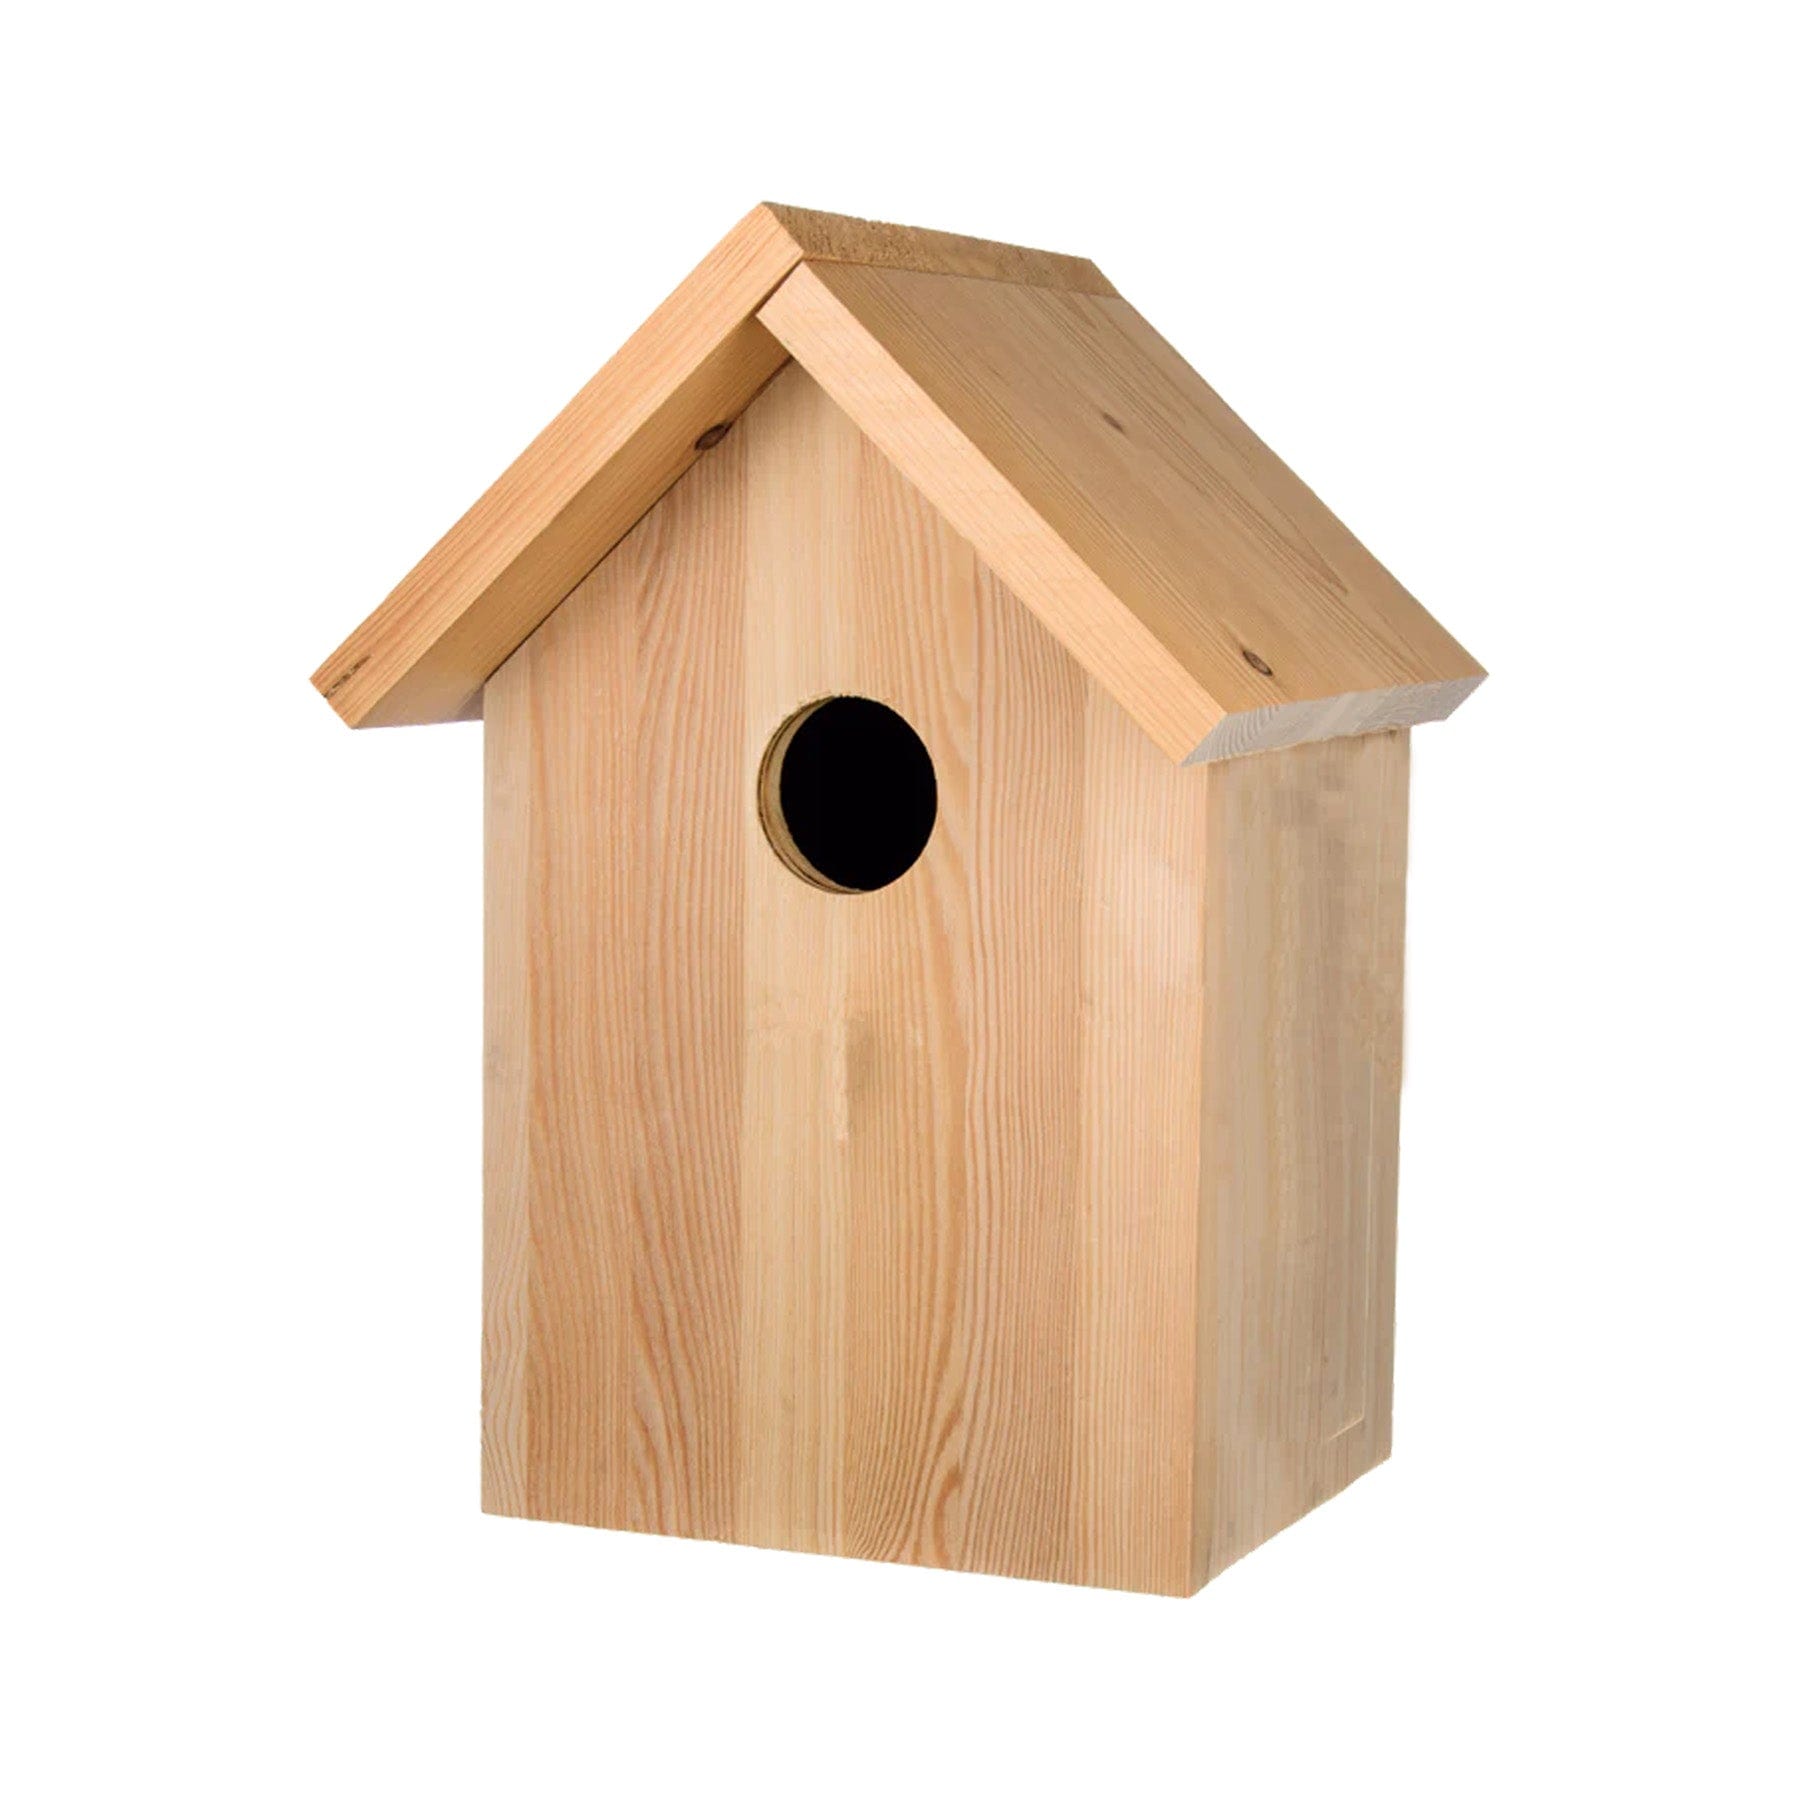 Spiro bird nesting box